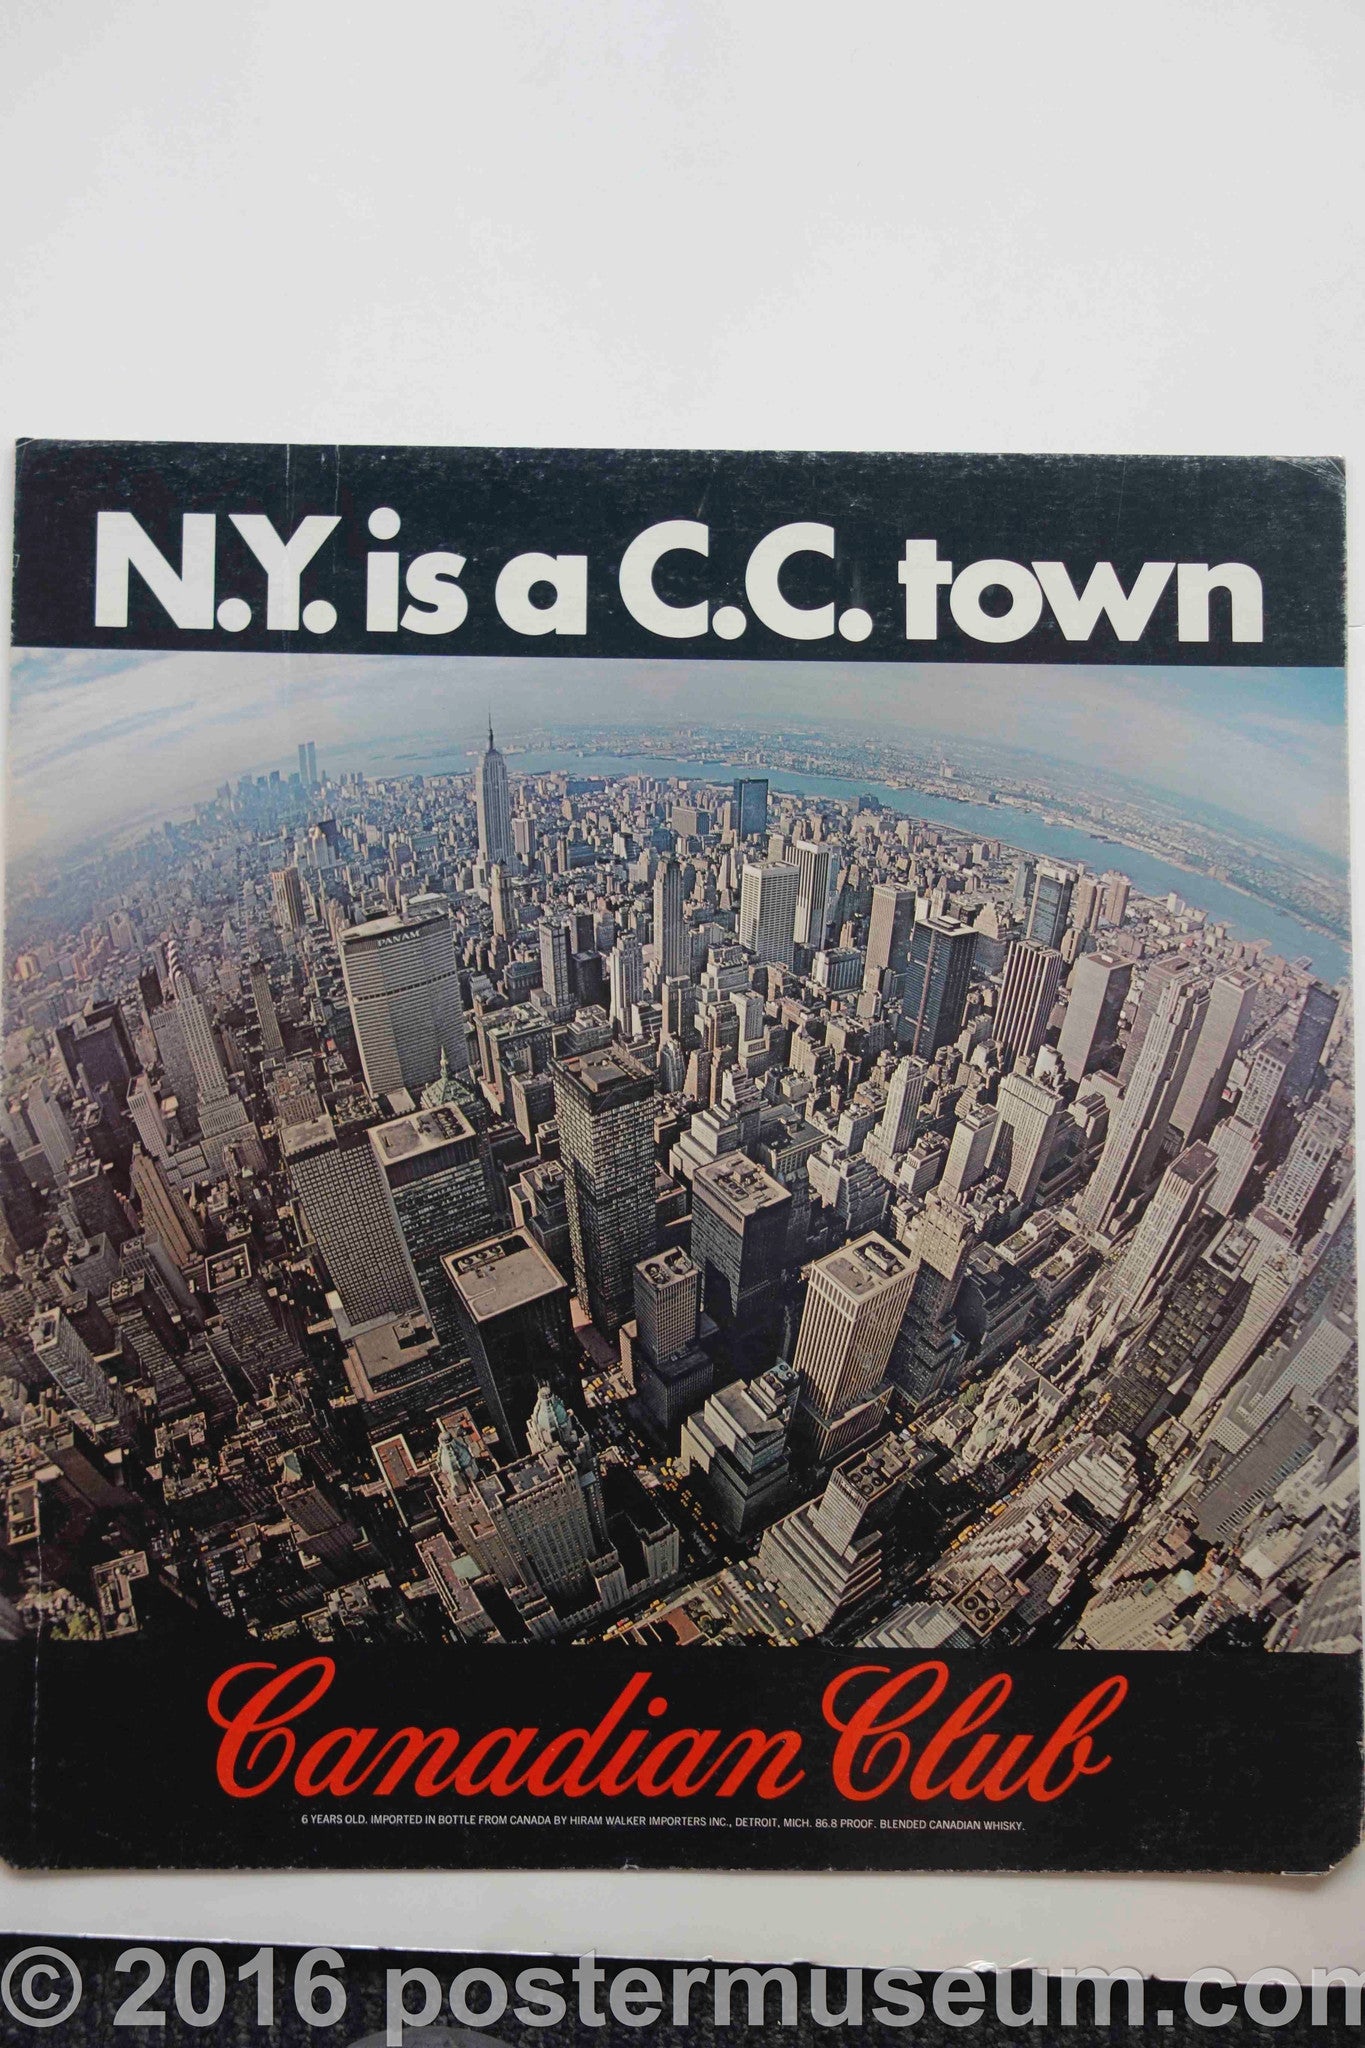 N.Y. is a C.C. town